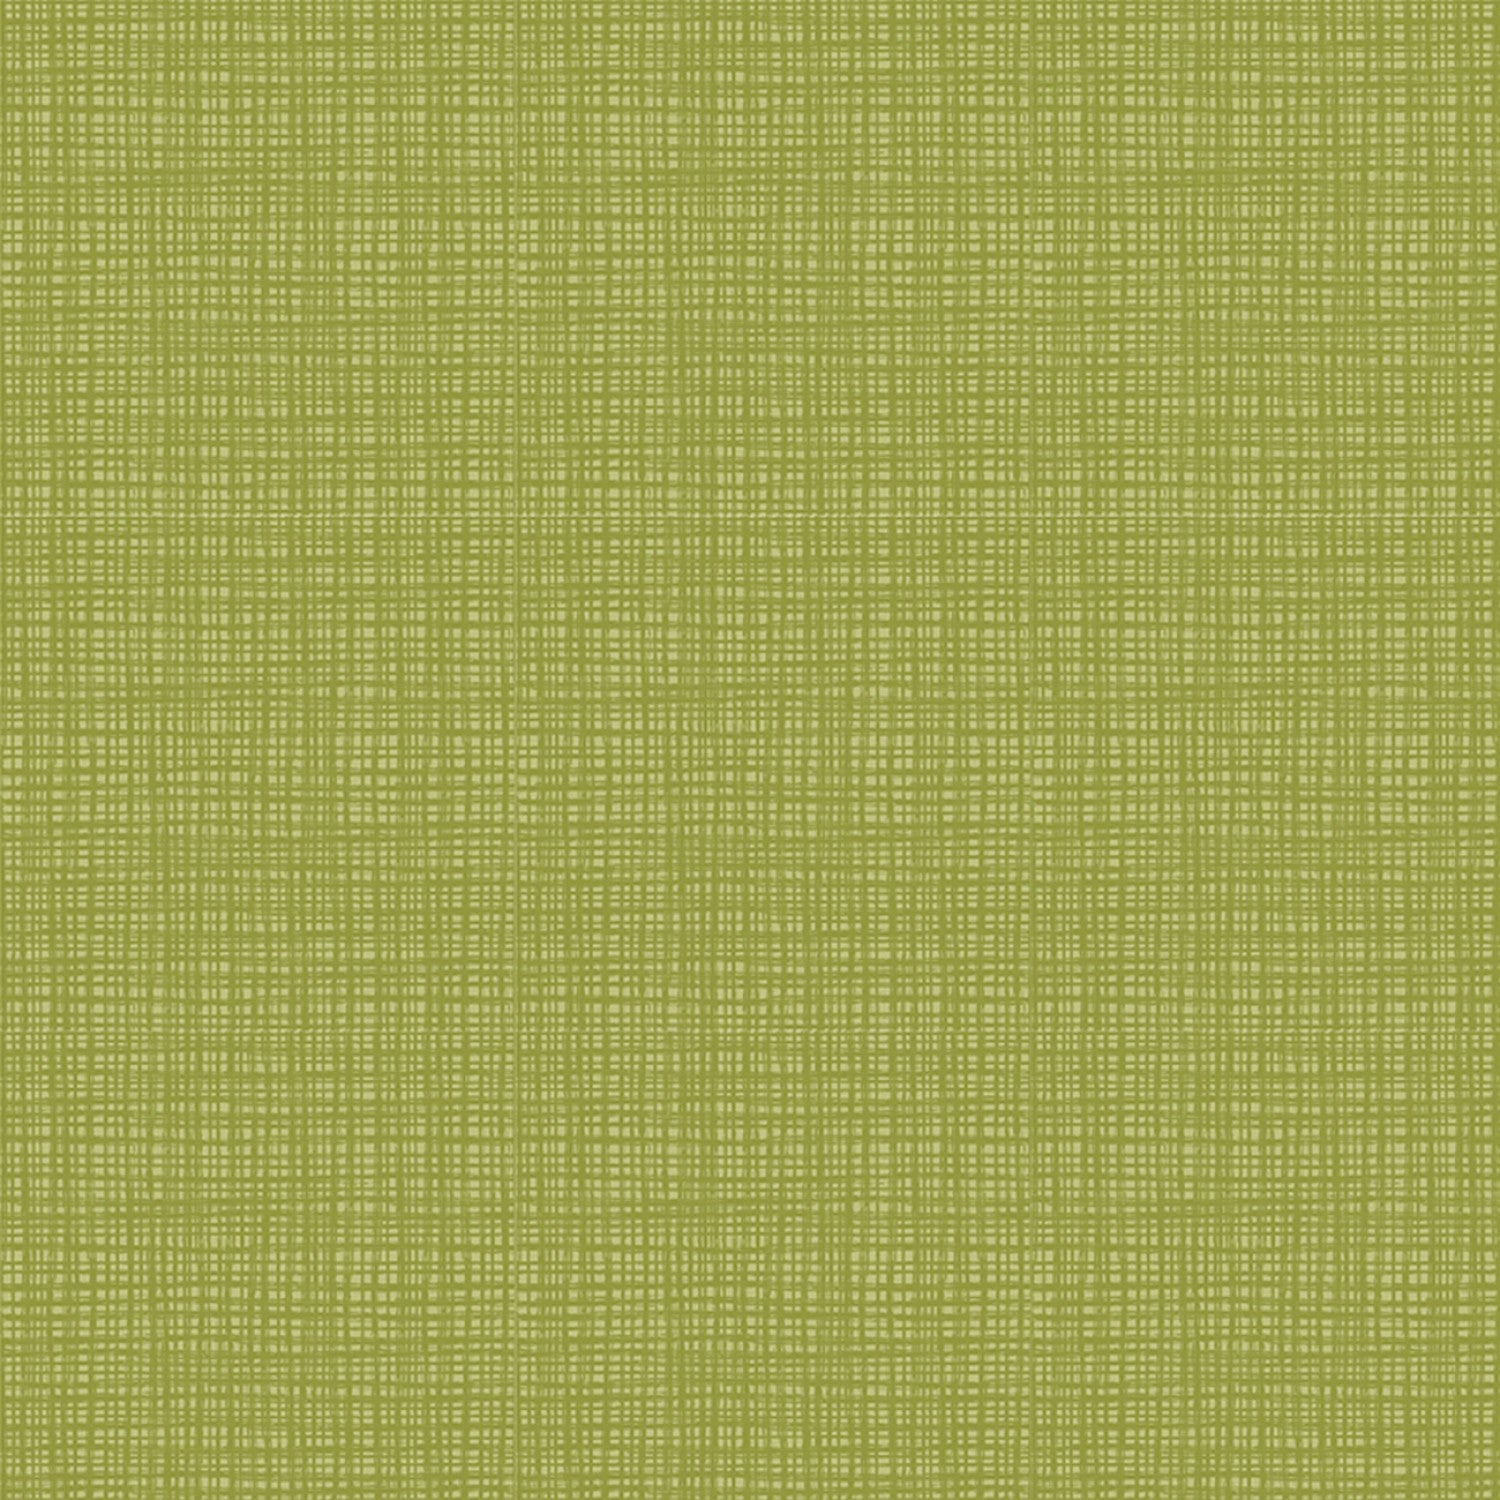 Fabric, Texture by Sandy Gervais, Asparagus C610-Asparagus